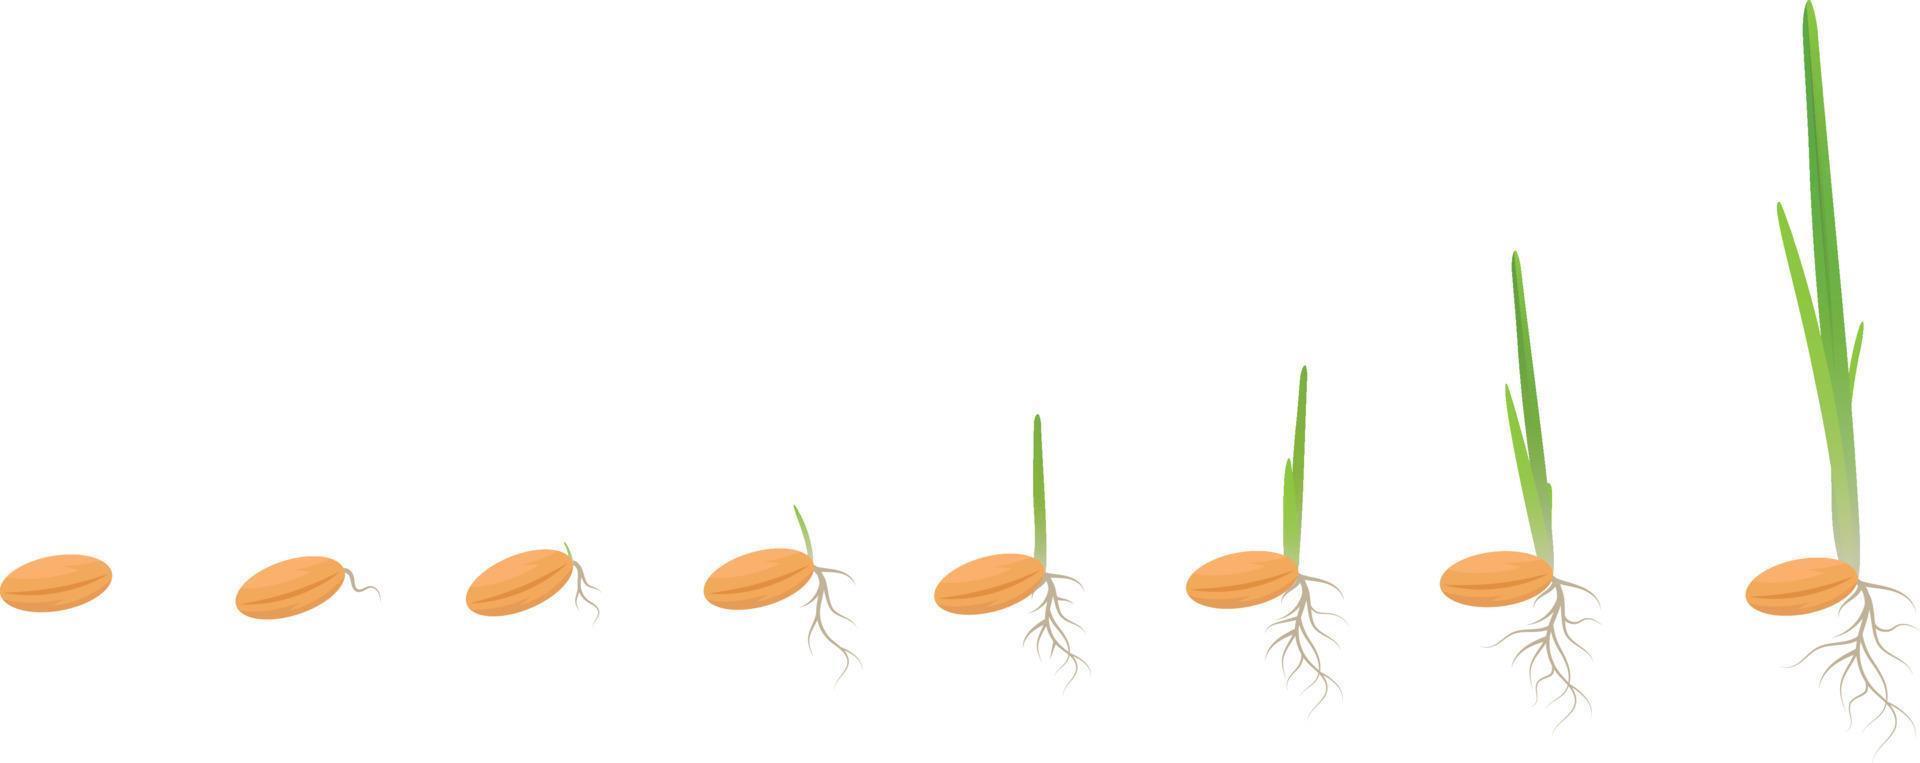 tillväxtcykel av en veteväxt på en vit bakgrund, ekologiska veganprodukter koncept, eko. groddar av vete, råg, majs, hirs, korn, havre. frö växer till plantan. vektor illustration.